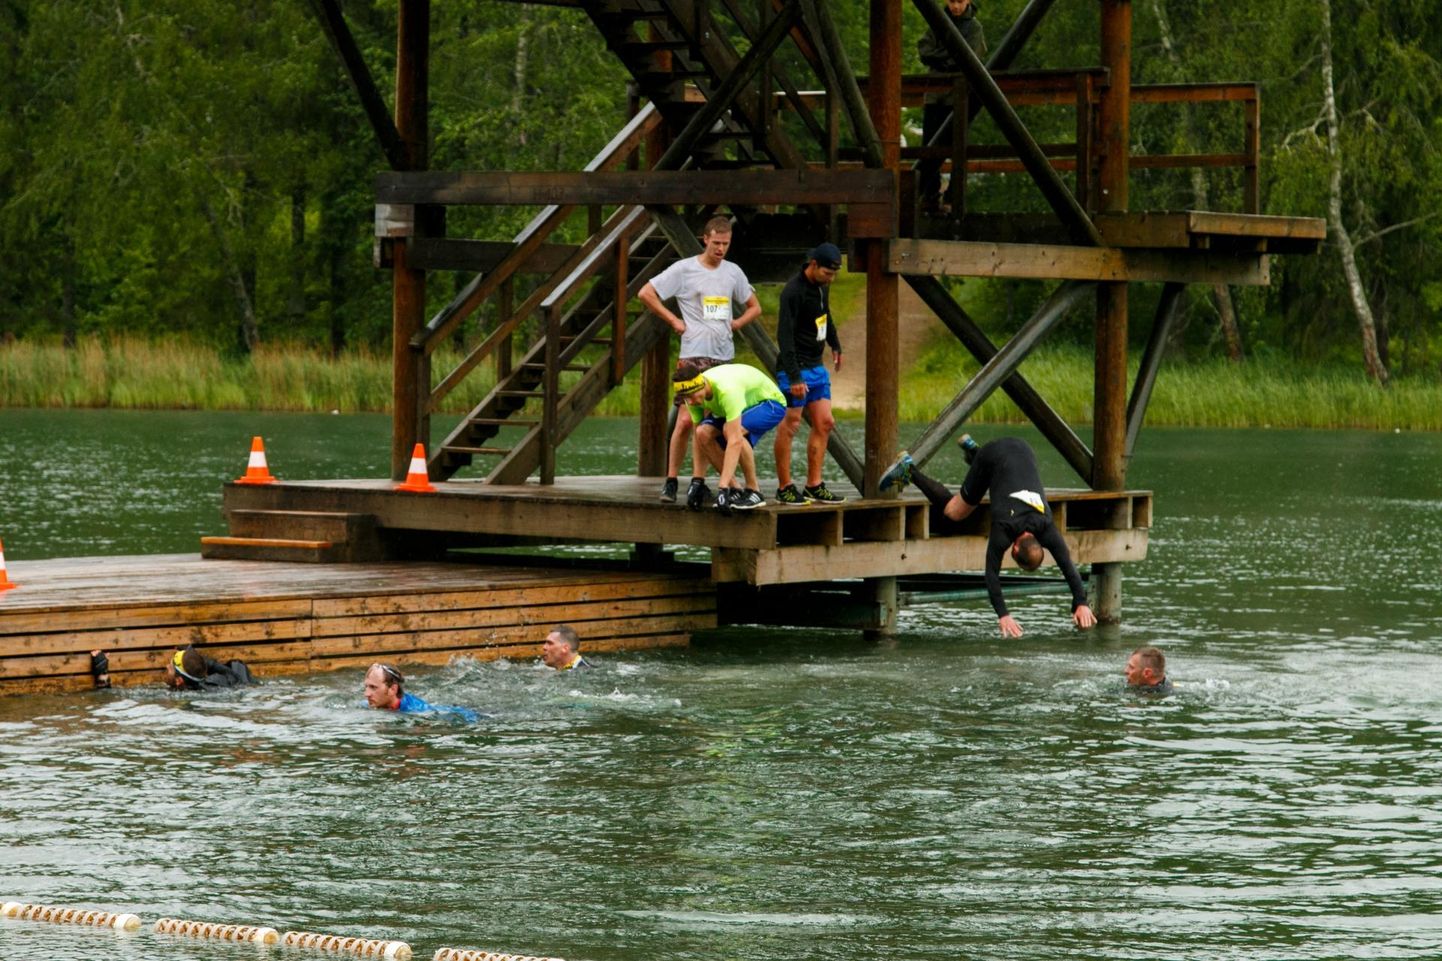 Võistlejatel tuleb ka hüppetornist vette sulpsata.